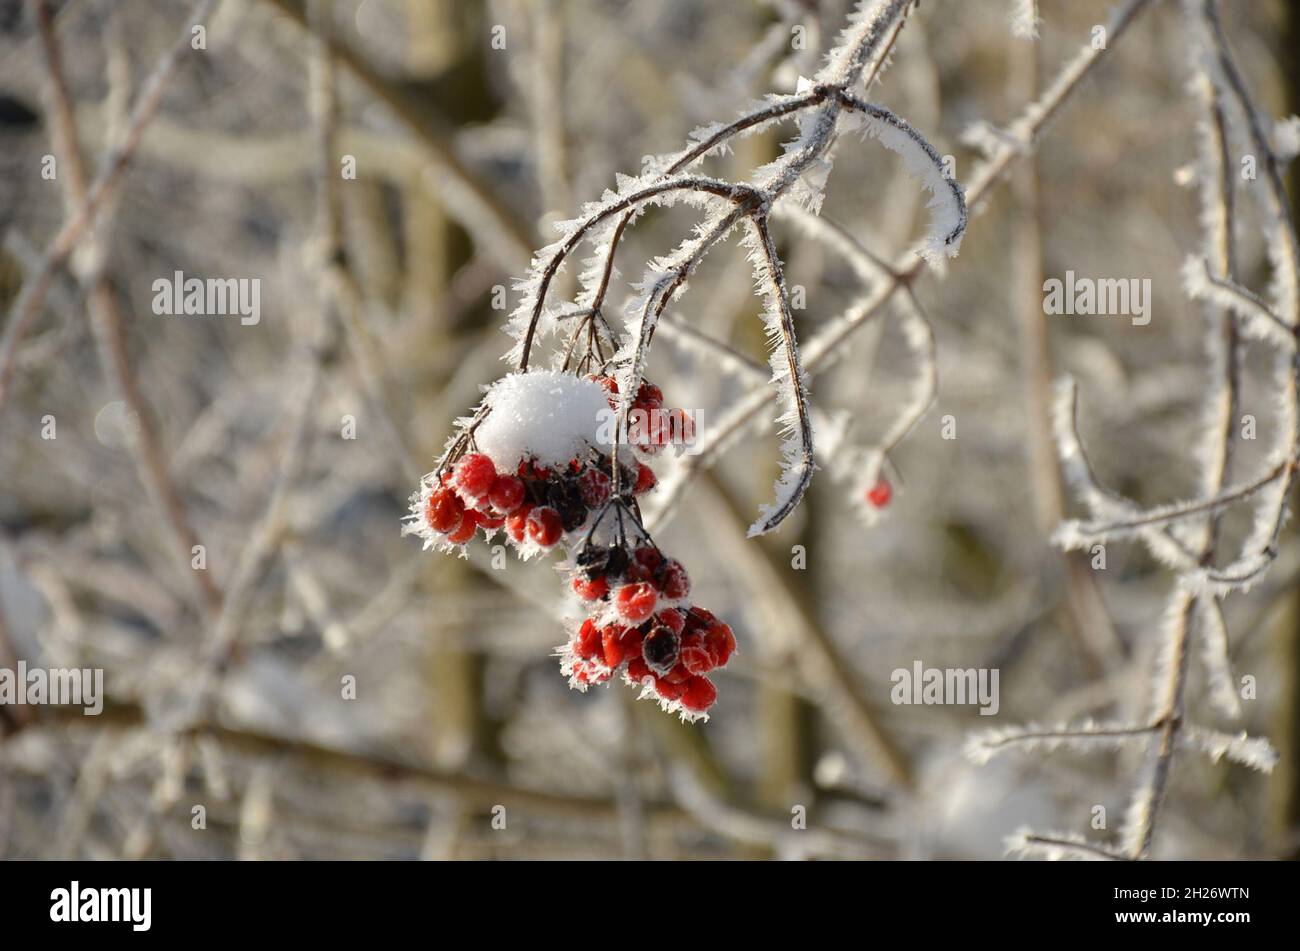 Früchte des Gemeinen Schneeballs mit Schneekristallen im Winter - Snowball fruits with snow crystals in winter Stock Photo